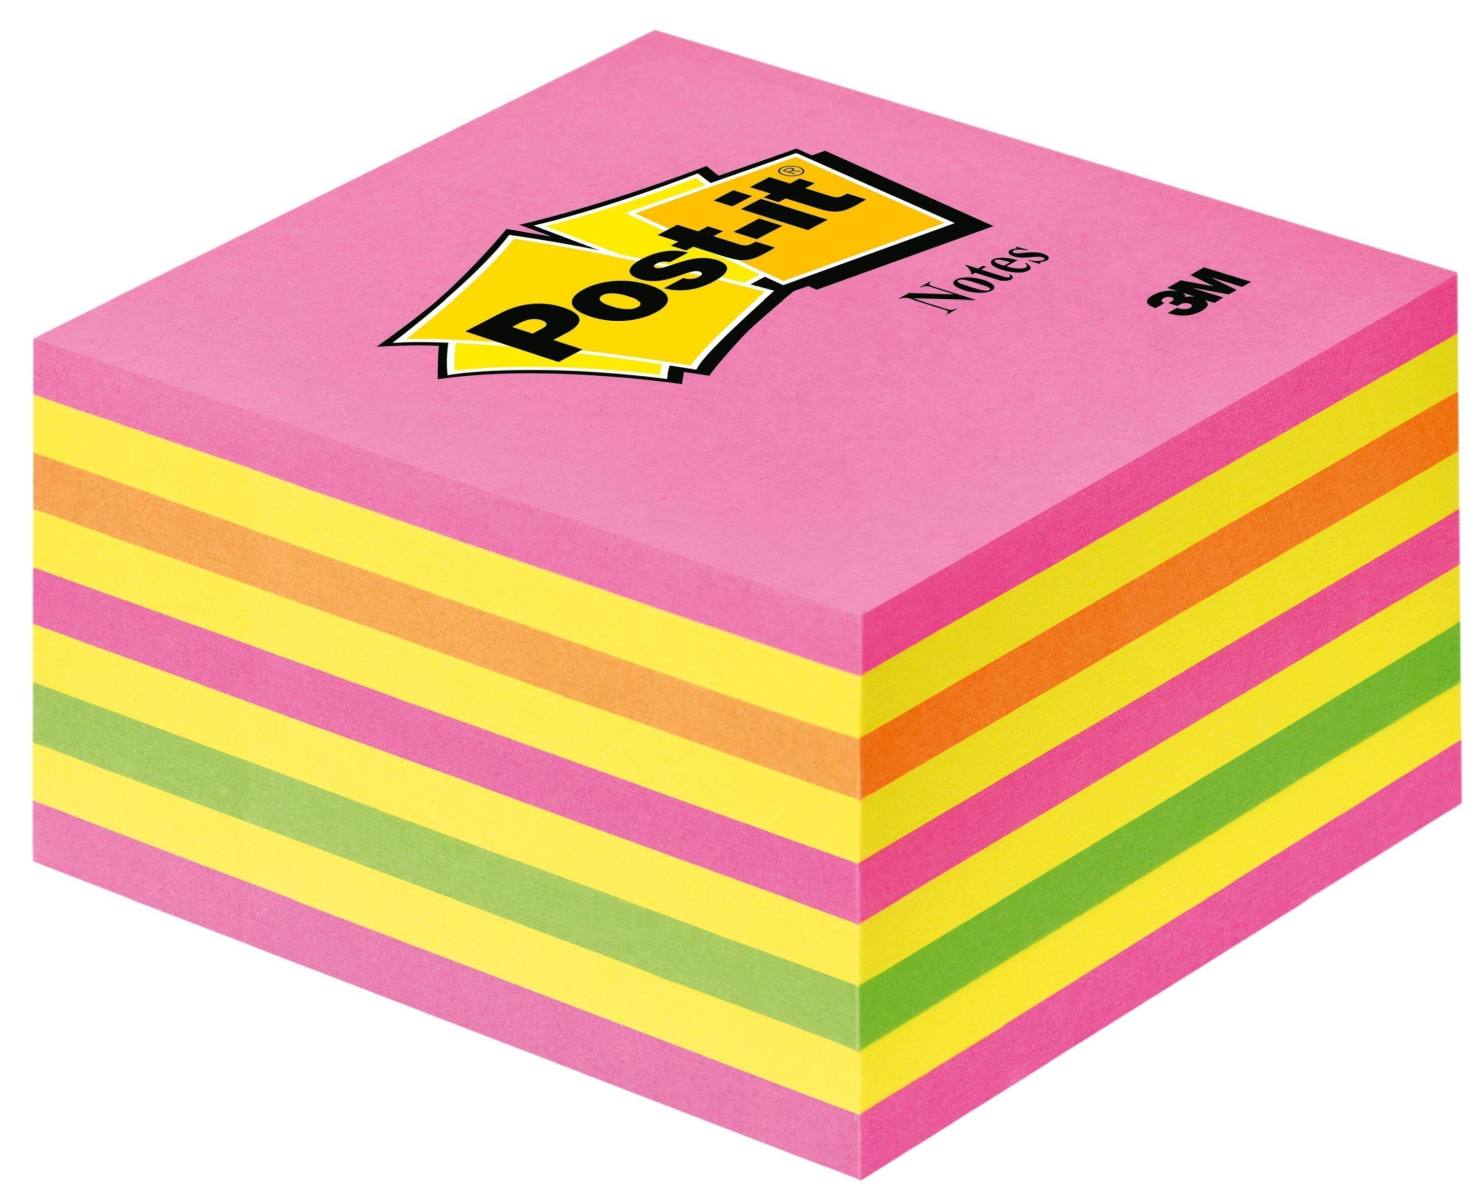 3M Post-it Kubus 2028NP, 76 mm x 76 mm, geel, neongroen, neonroze, roze, 1 kubus van 450 vellen, pak=12 stuks